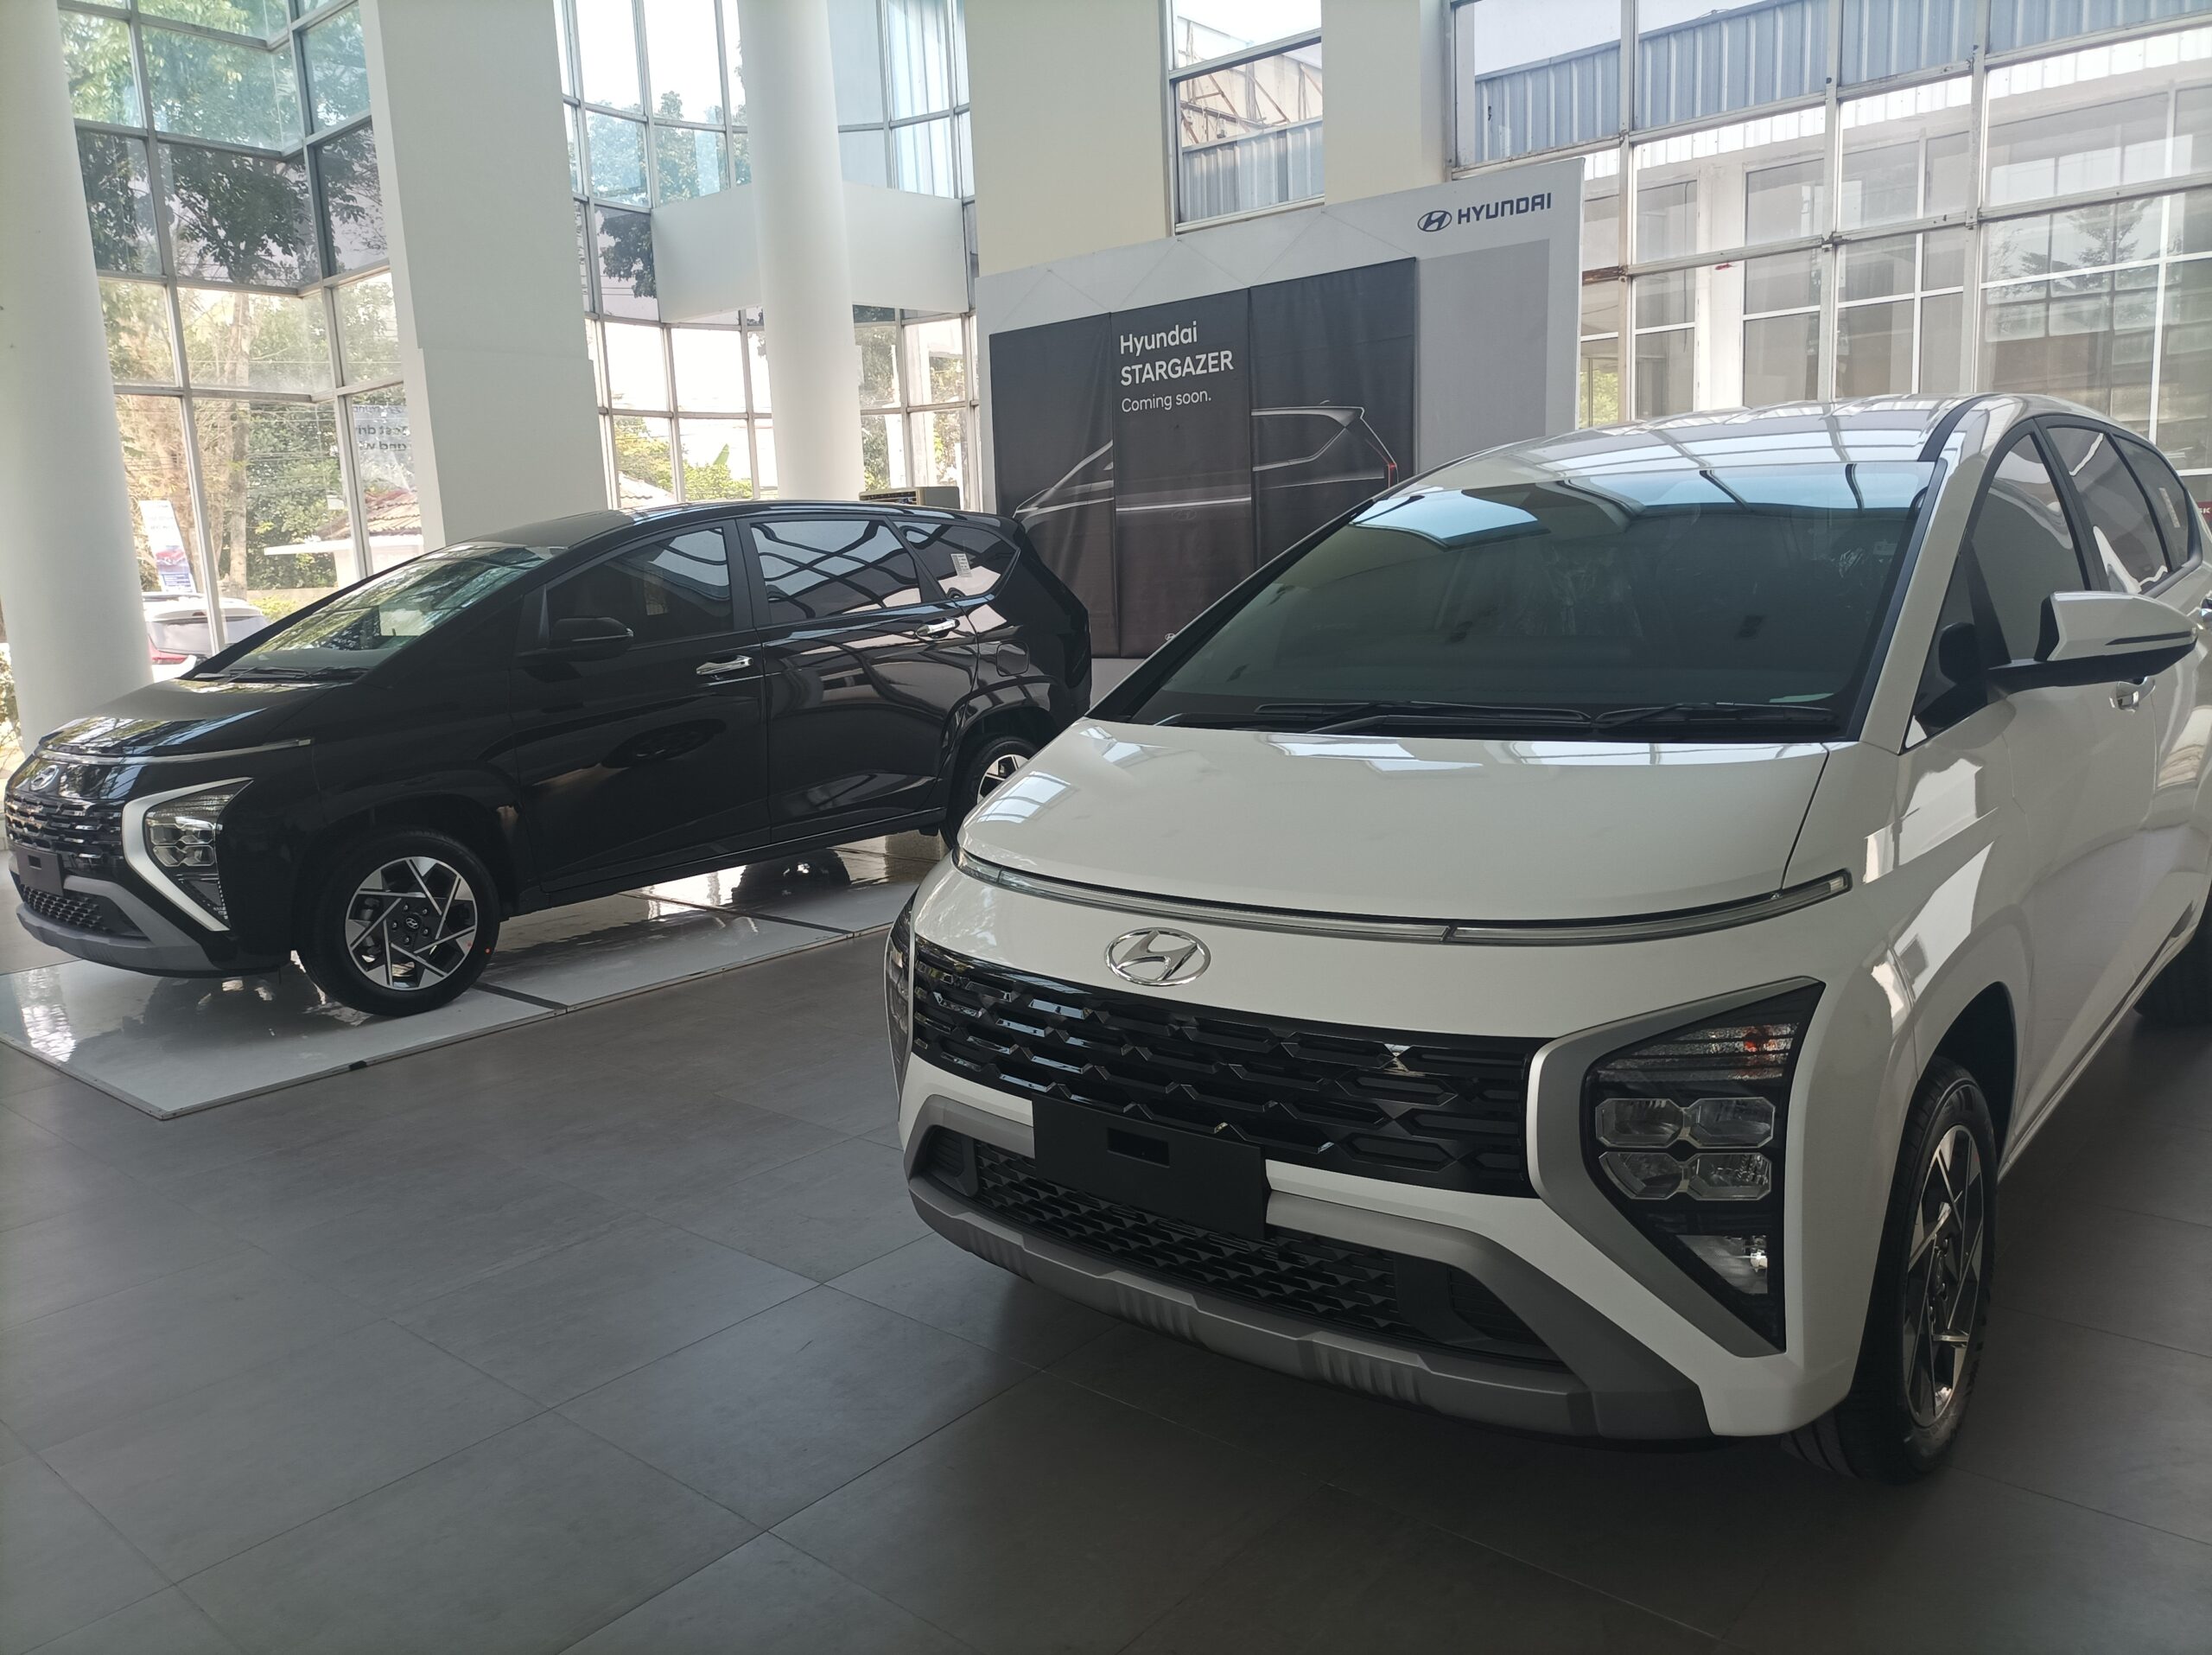 Mengenal Lebih Dekat Hyundai Stargazer: Mobil Masa Depan yang Menginspirasi